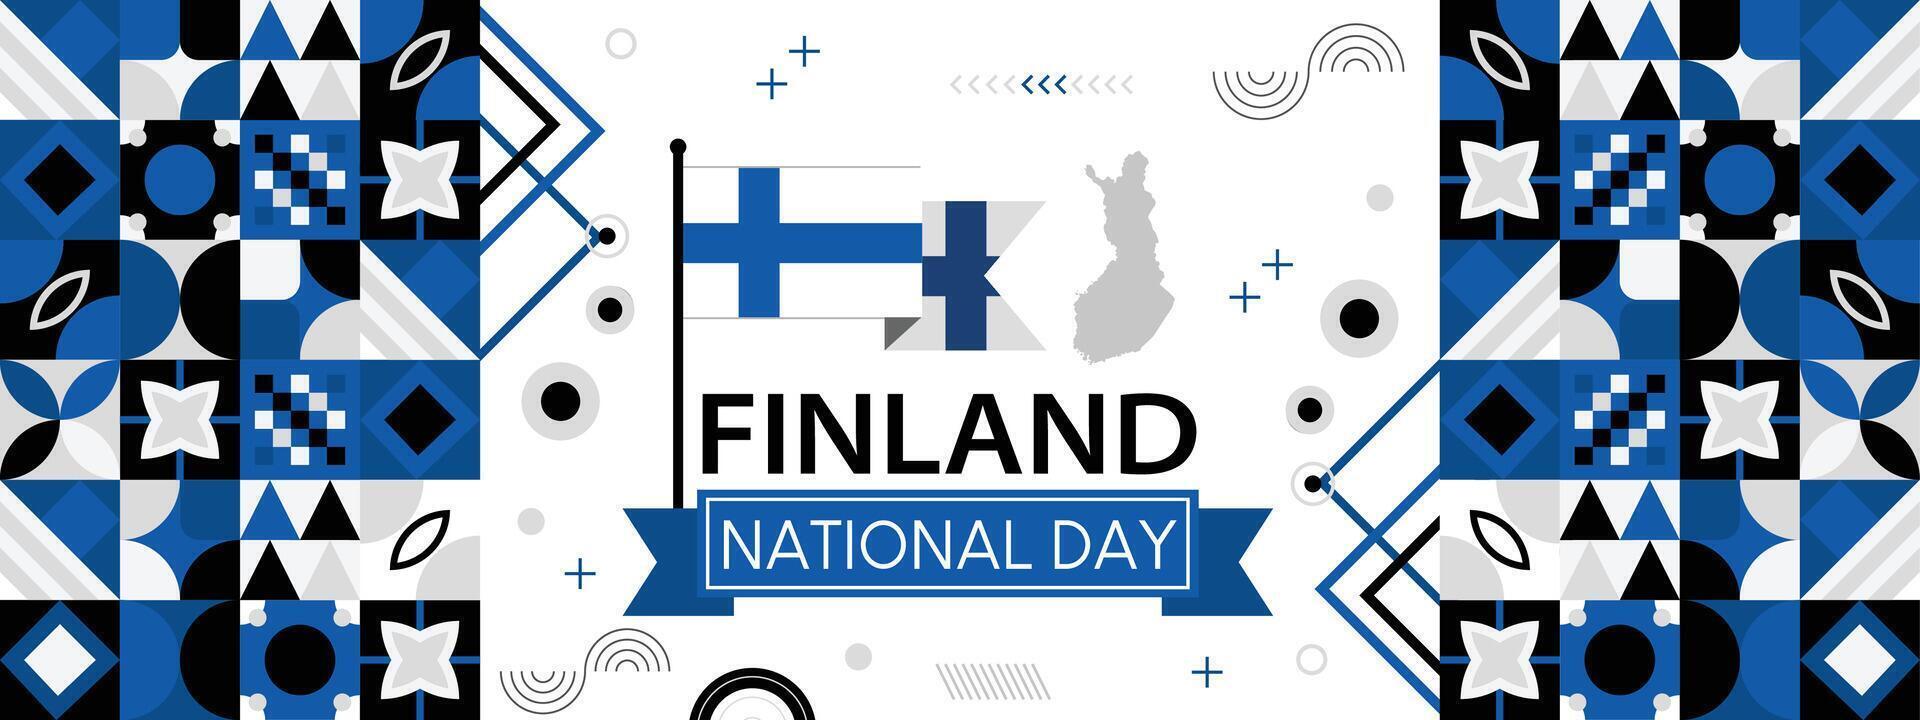 Finlande nationale journée bannière avec carte, drapeau couleurs thème Contexte et géométrique abstrait rétro moderne coloré conception vecteur